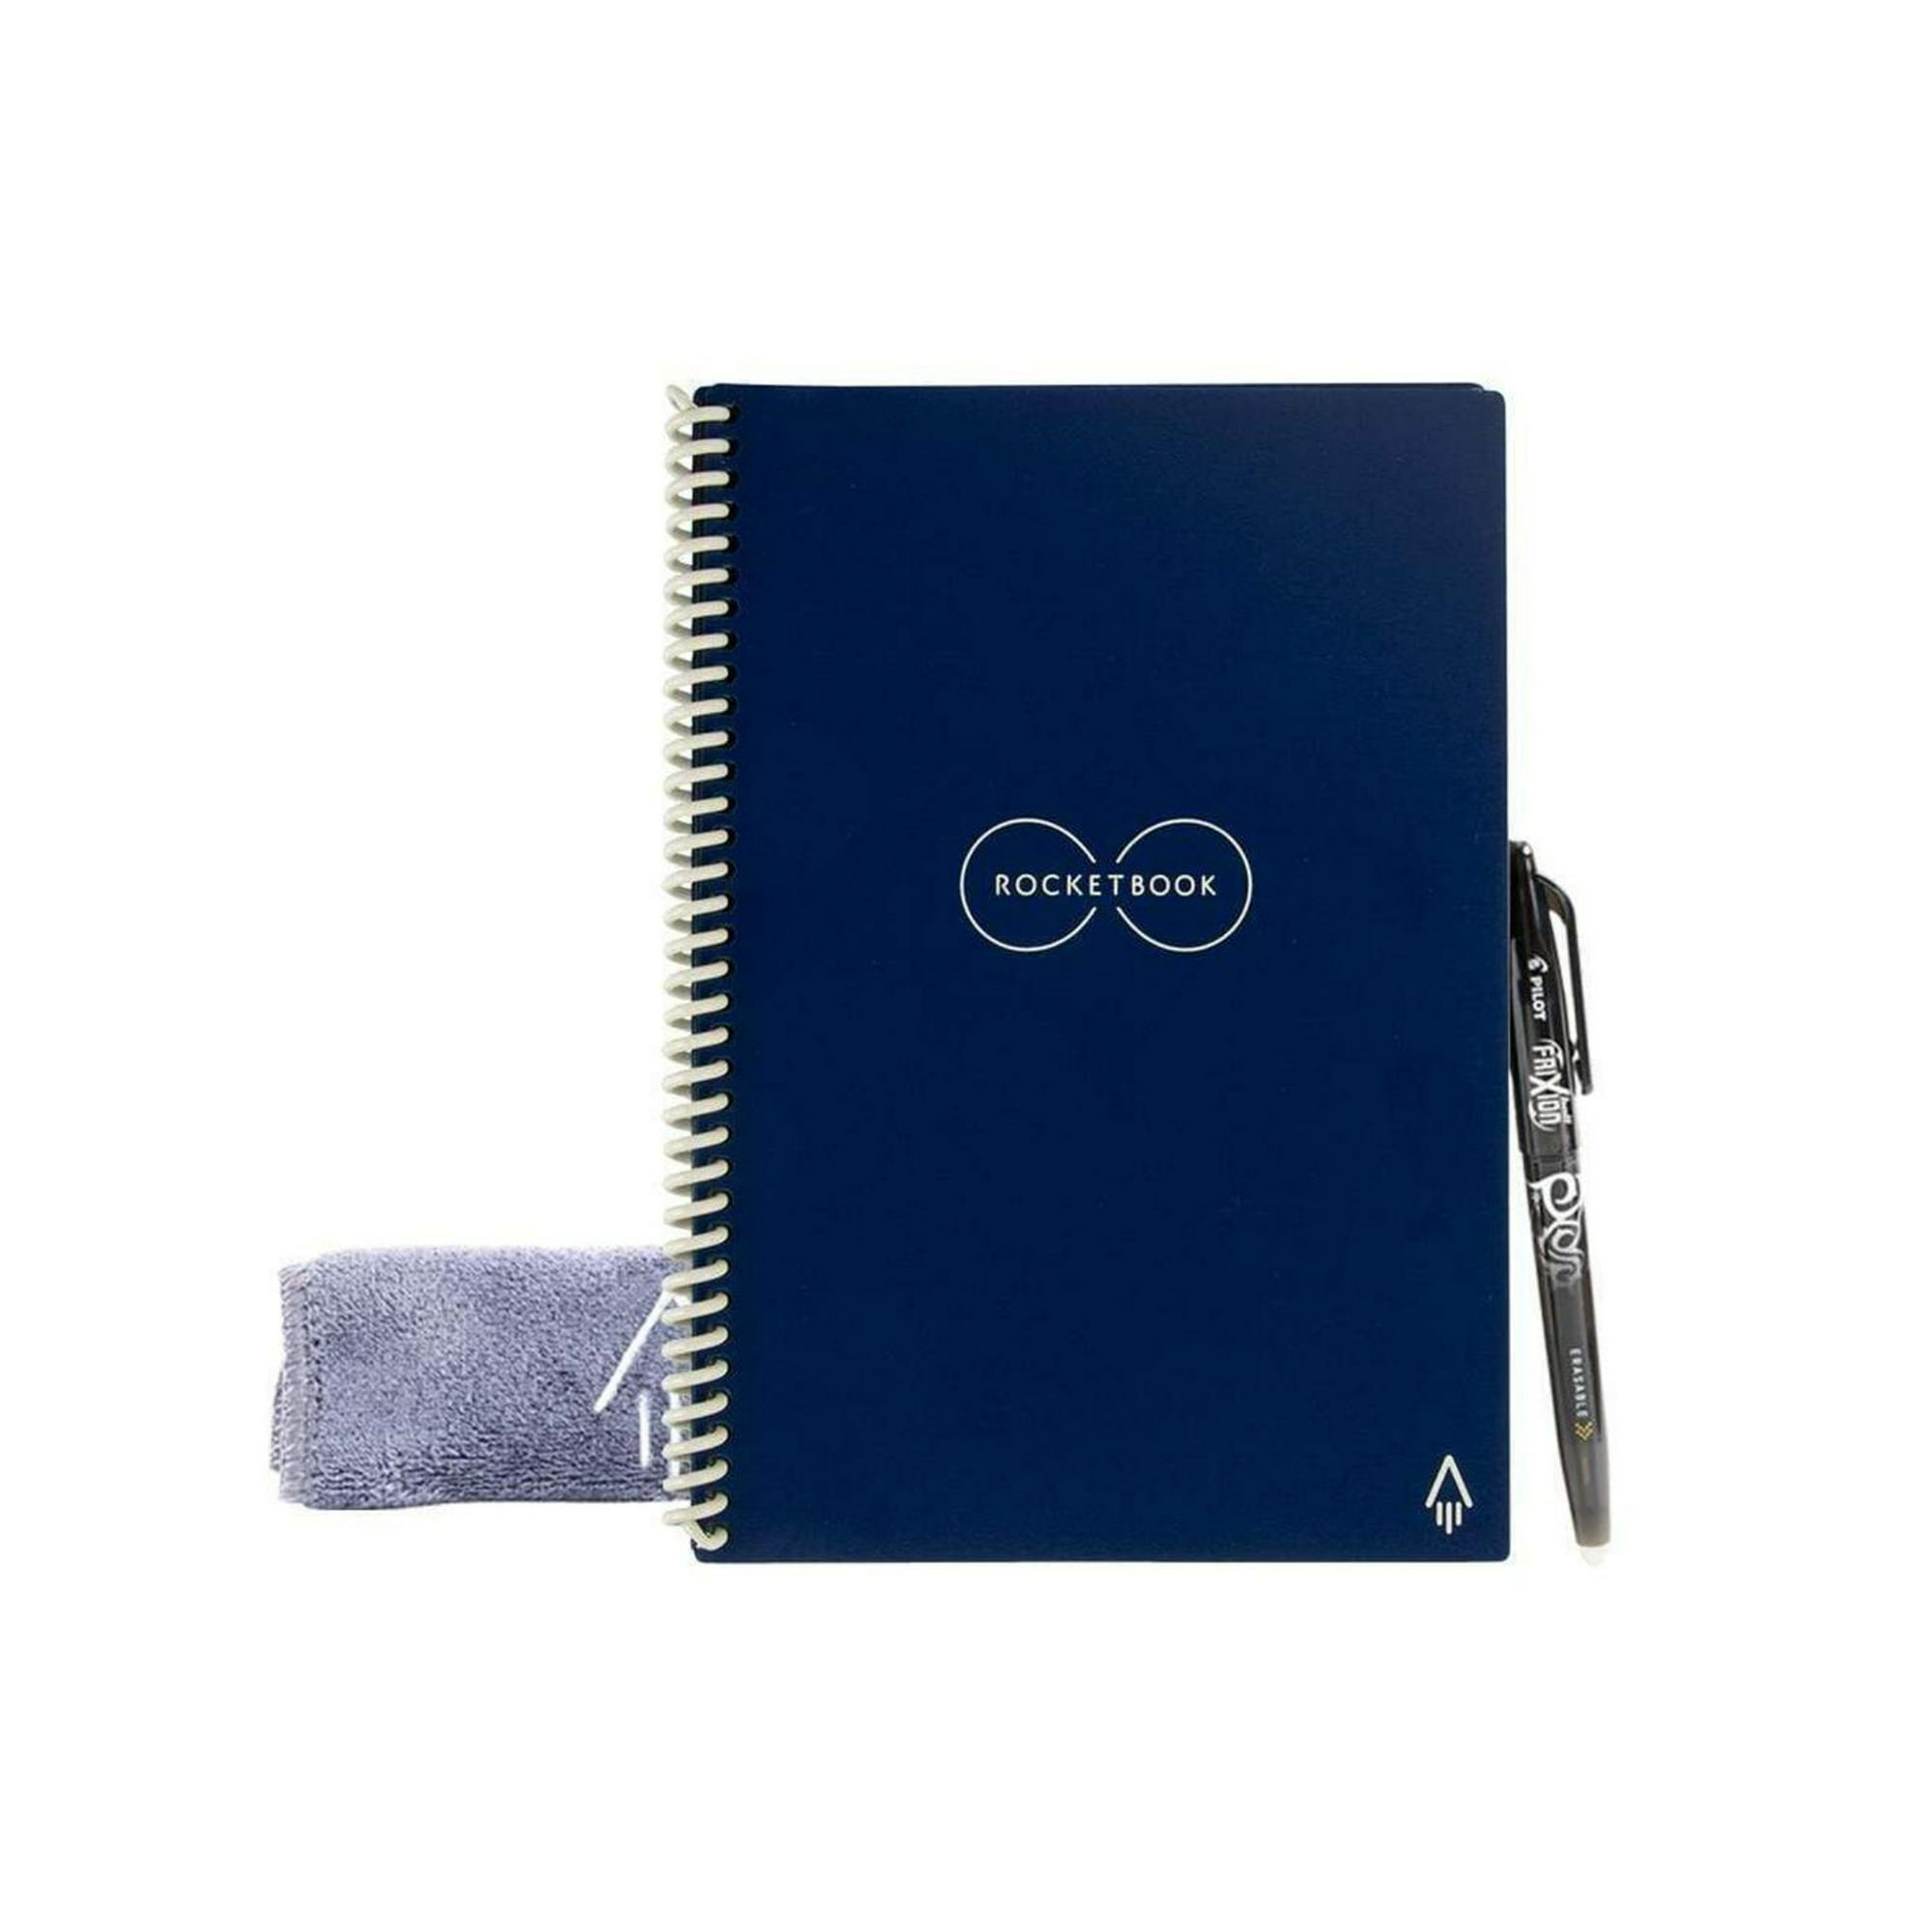 Rocketbook Cuaderno inteligente reutilizable, cuaderno con cuadrícula de  puntos ecológico con 1 bolígrafo Pilot Frixion y 1 paño de microfibra